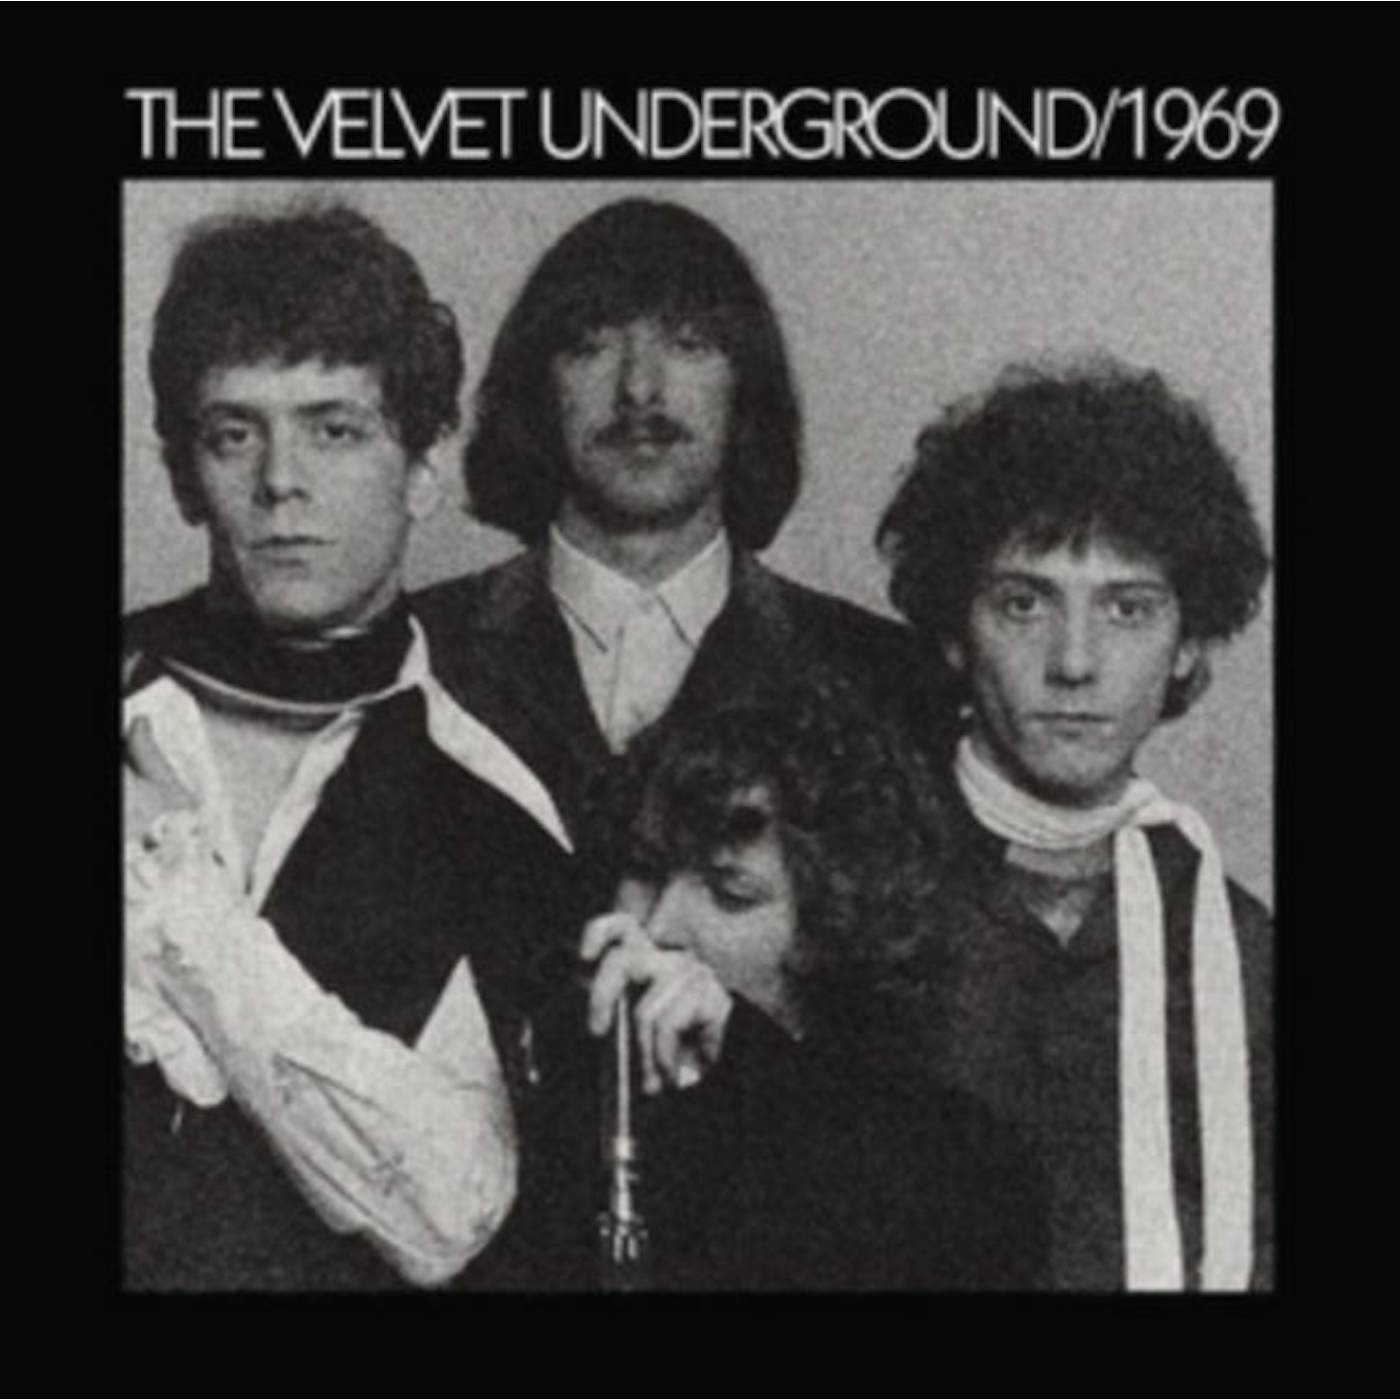 The Velvet Underground LP Vinyl Record - 19 69